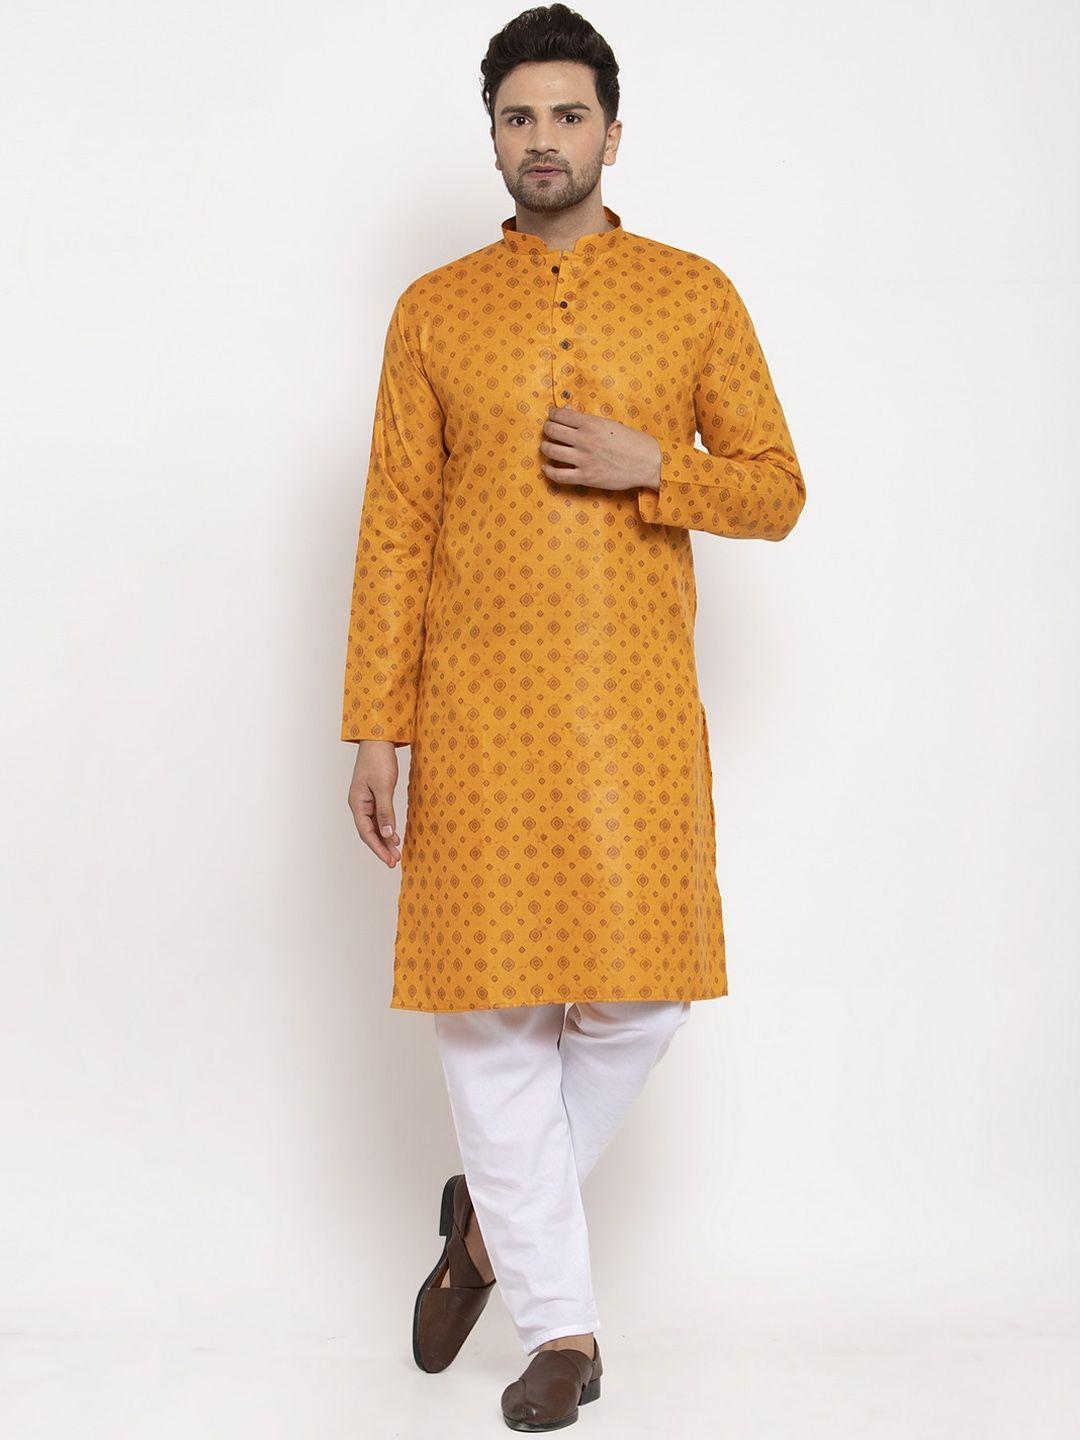 kraft india men mustard & brown ethnic motifs printed regular kurta with pyjamas